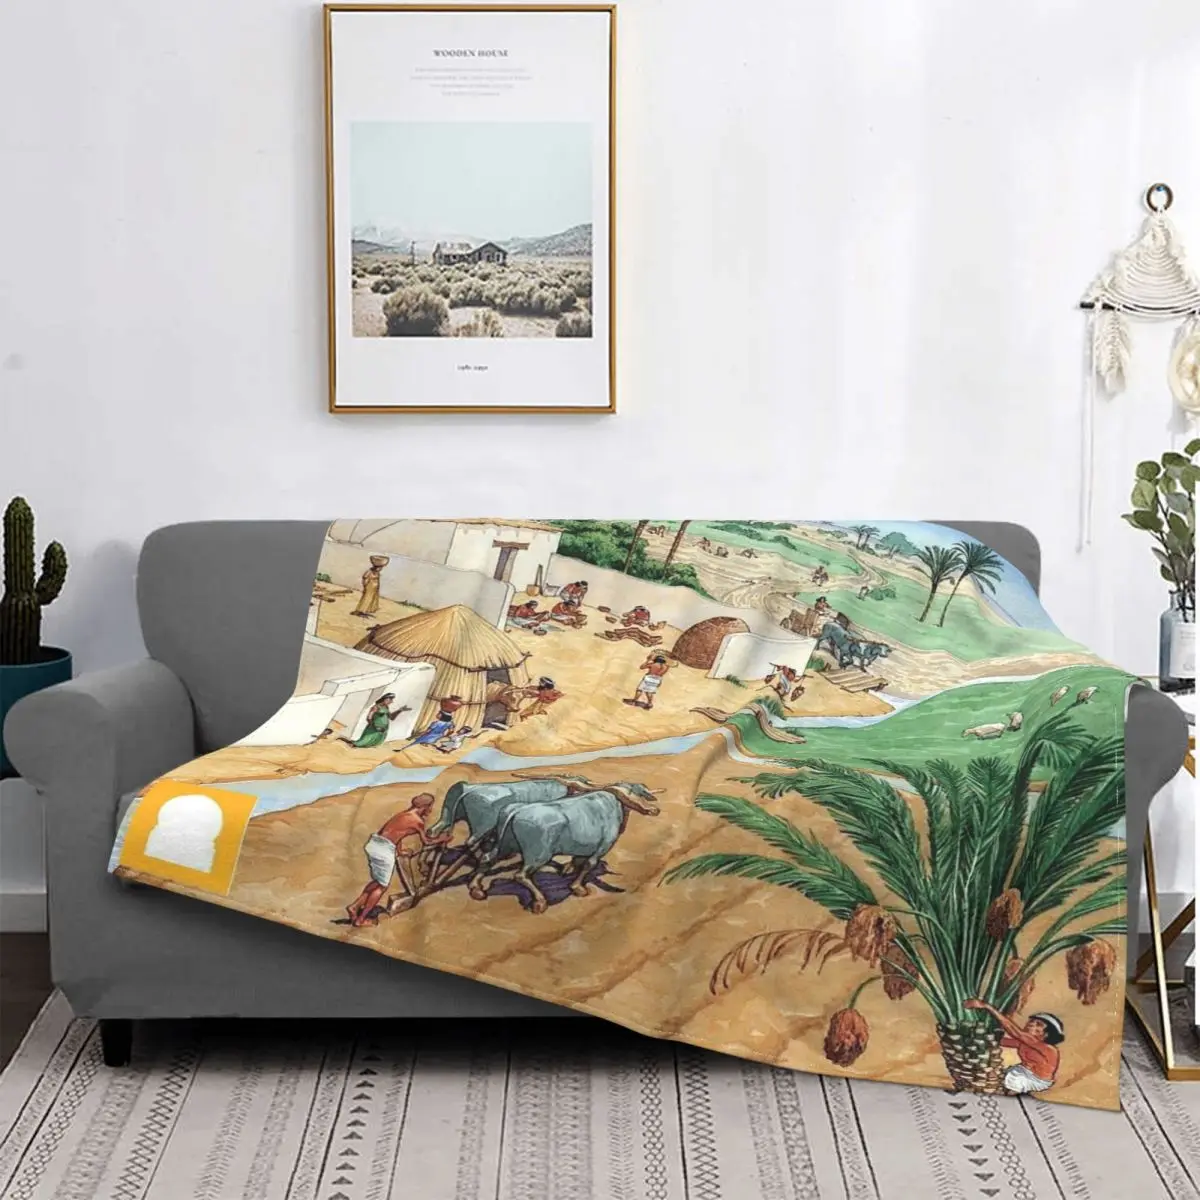 

Фланелевое Одеяло в стиле древней египетской цивилизации, осенне-зимнее мягкое покрывало в африканском стиле, офисное покрывало